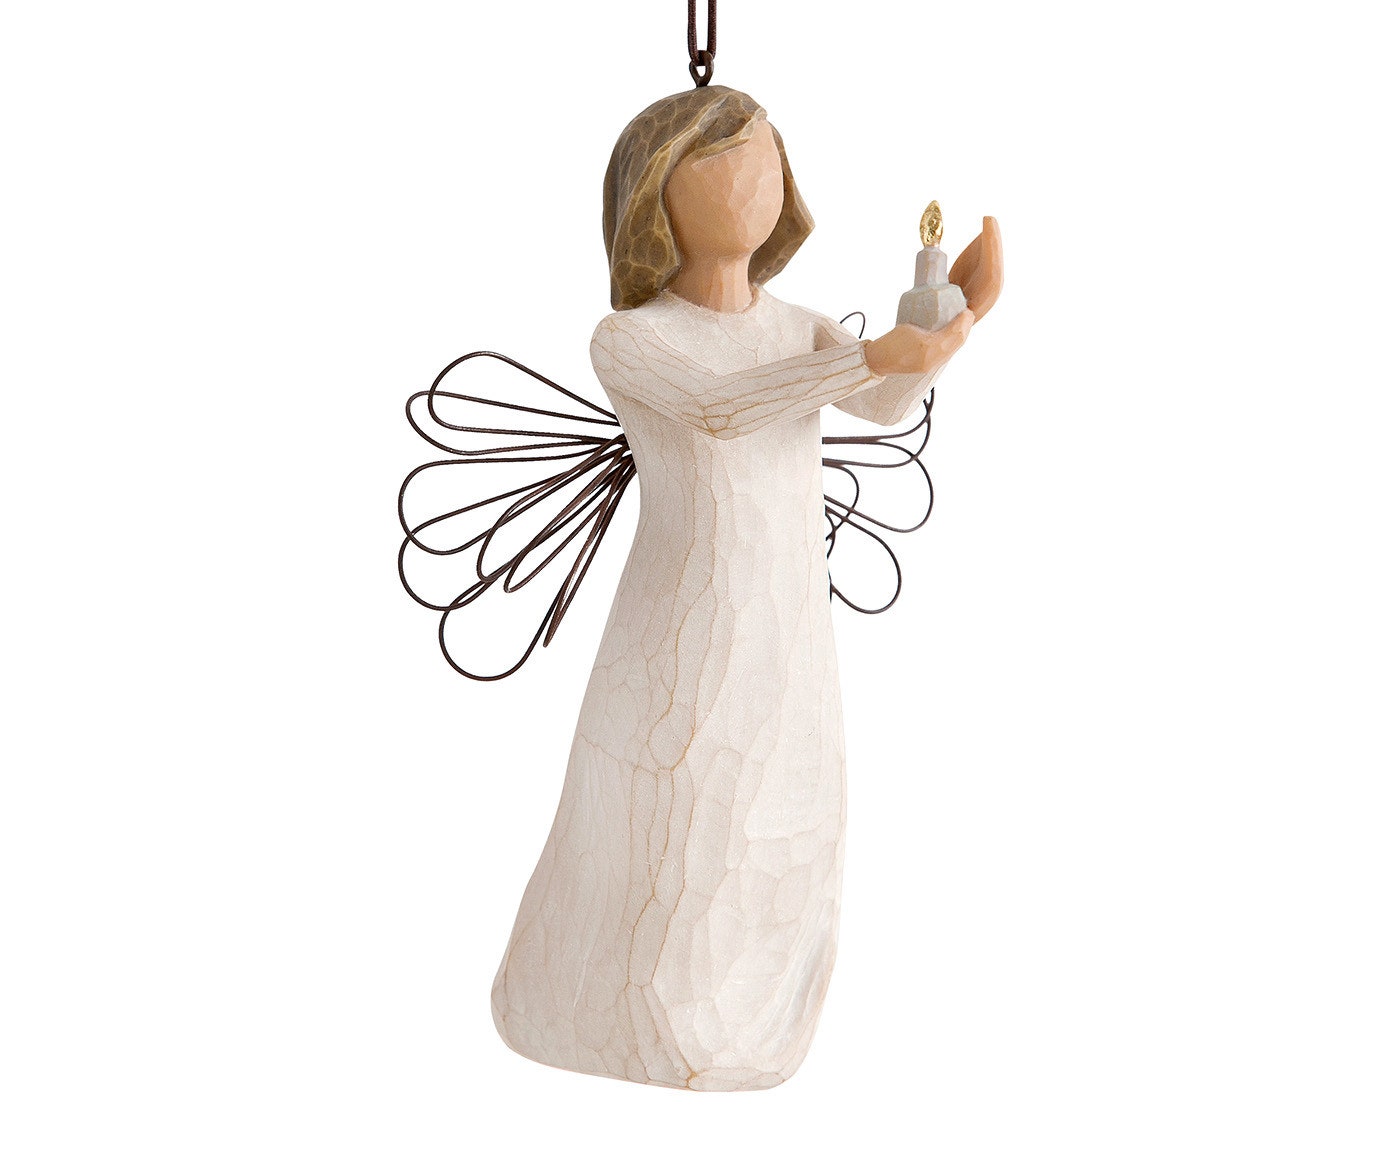 Статуэтка Angel Of Hope Ornament от Willow Tree 5780 руб.